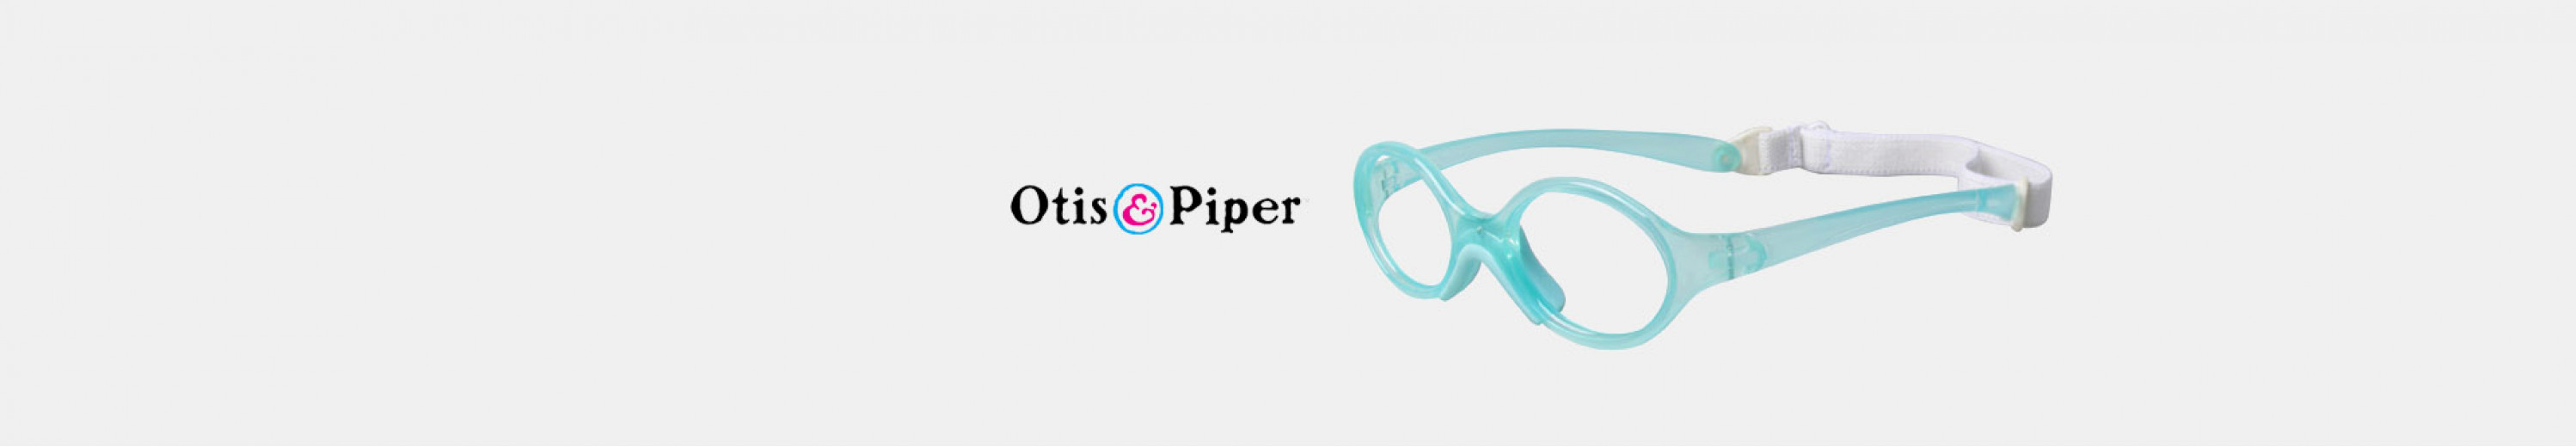 Otis and Piper Eyeglasses for Kids